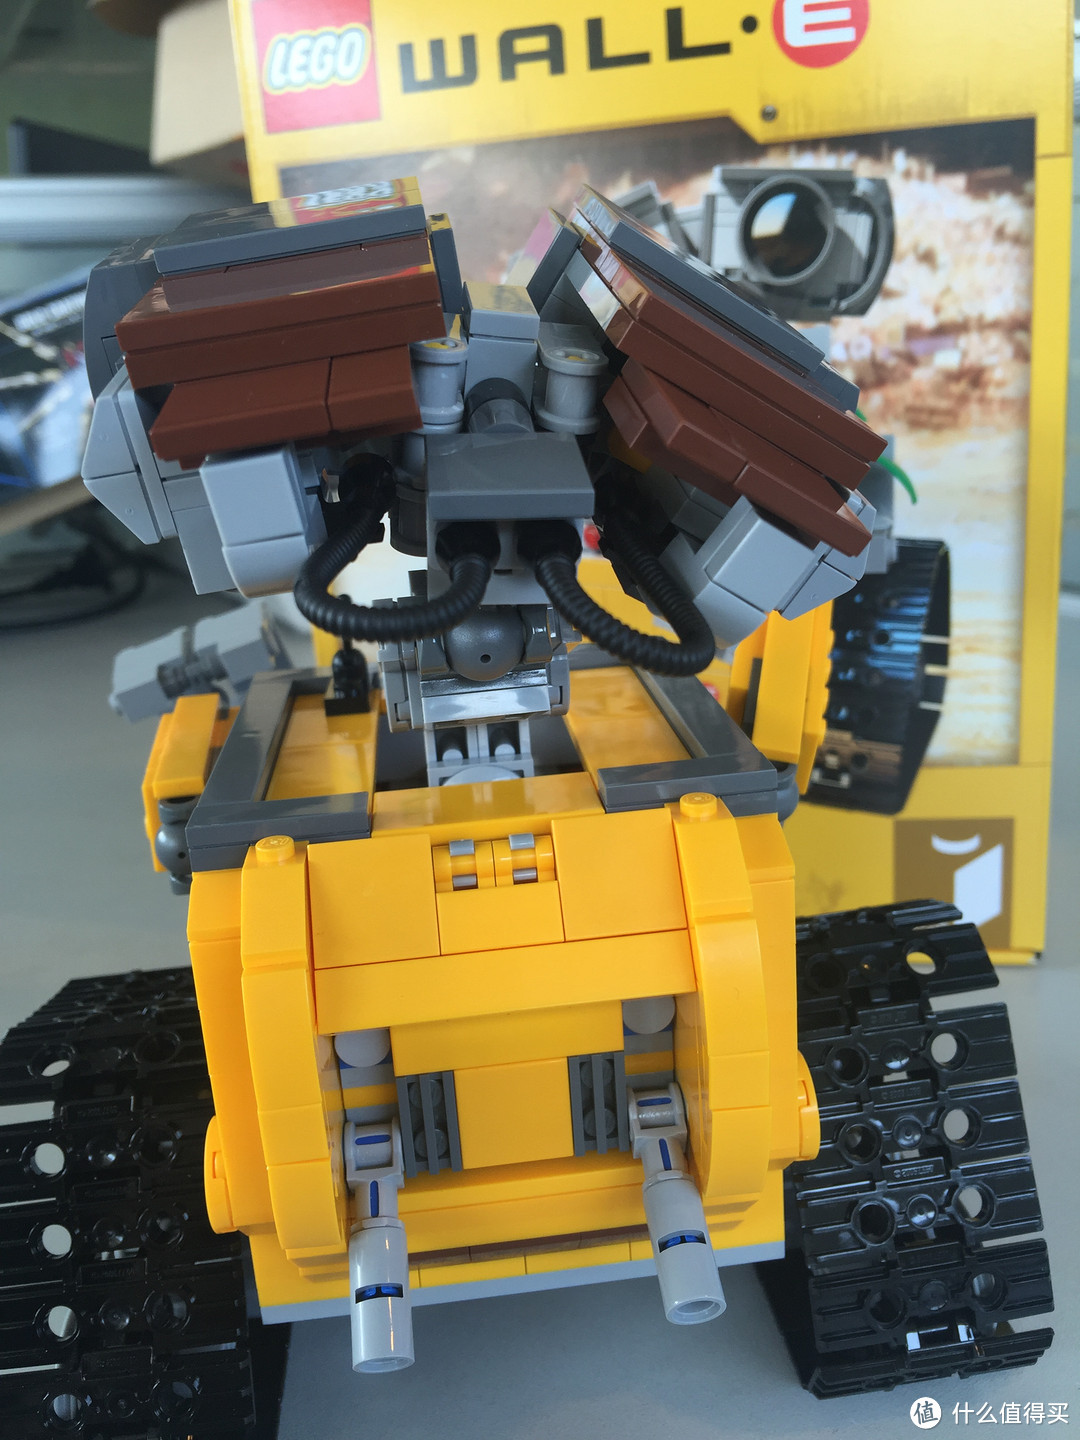 终于等到你——铁脖子 WALL·E 瓦力 开箱晒物